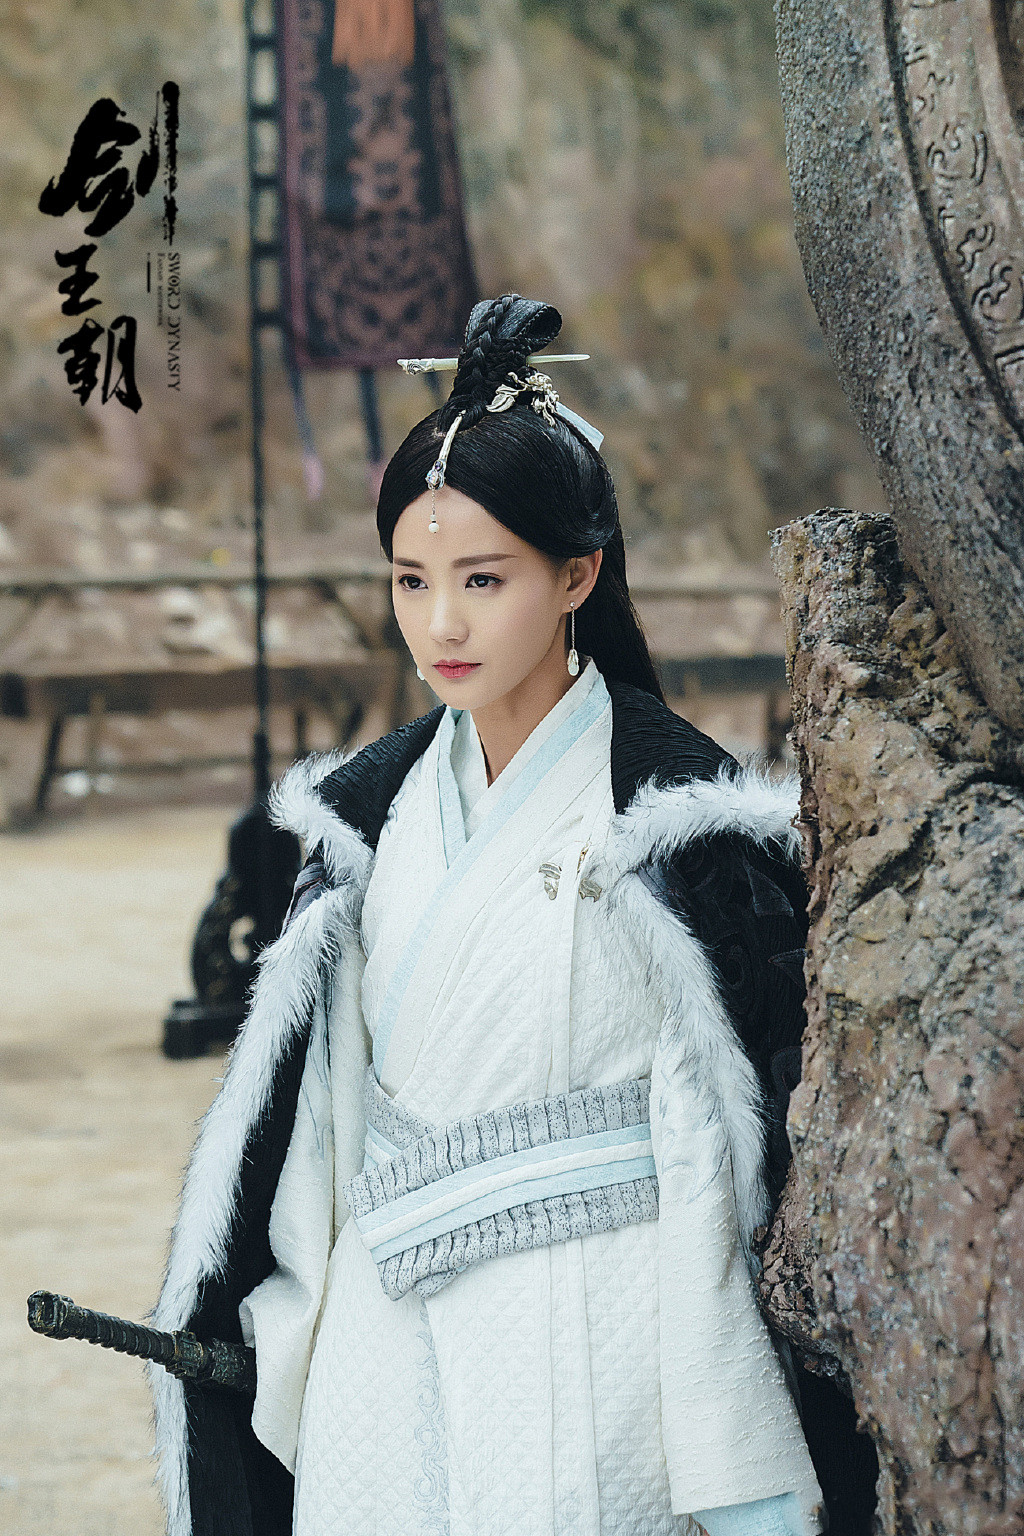 《朝歌》中饰演千年九尾狐胡仙儿,更是妲己的前身,虽然是个配角,但能